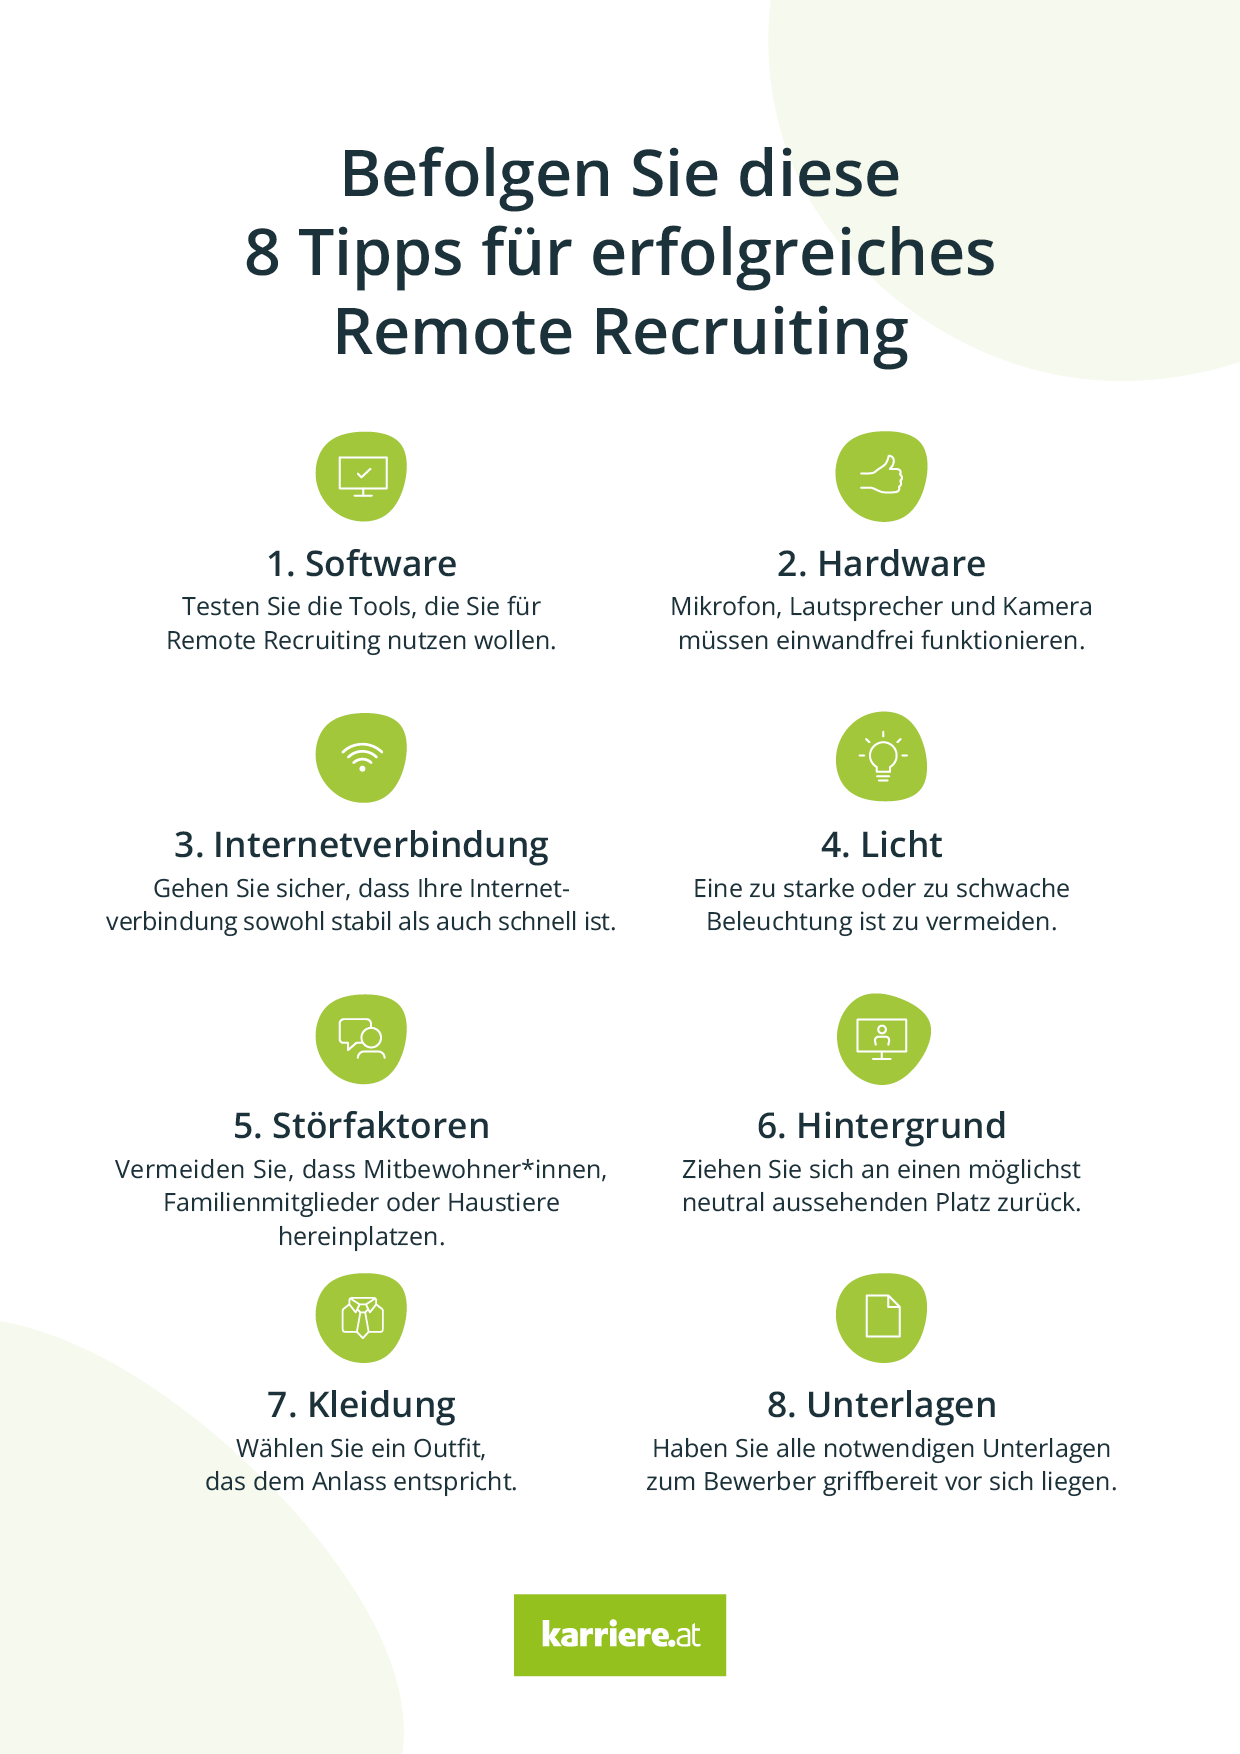 8 Tipps für Remote Recruiting